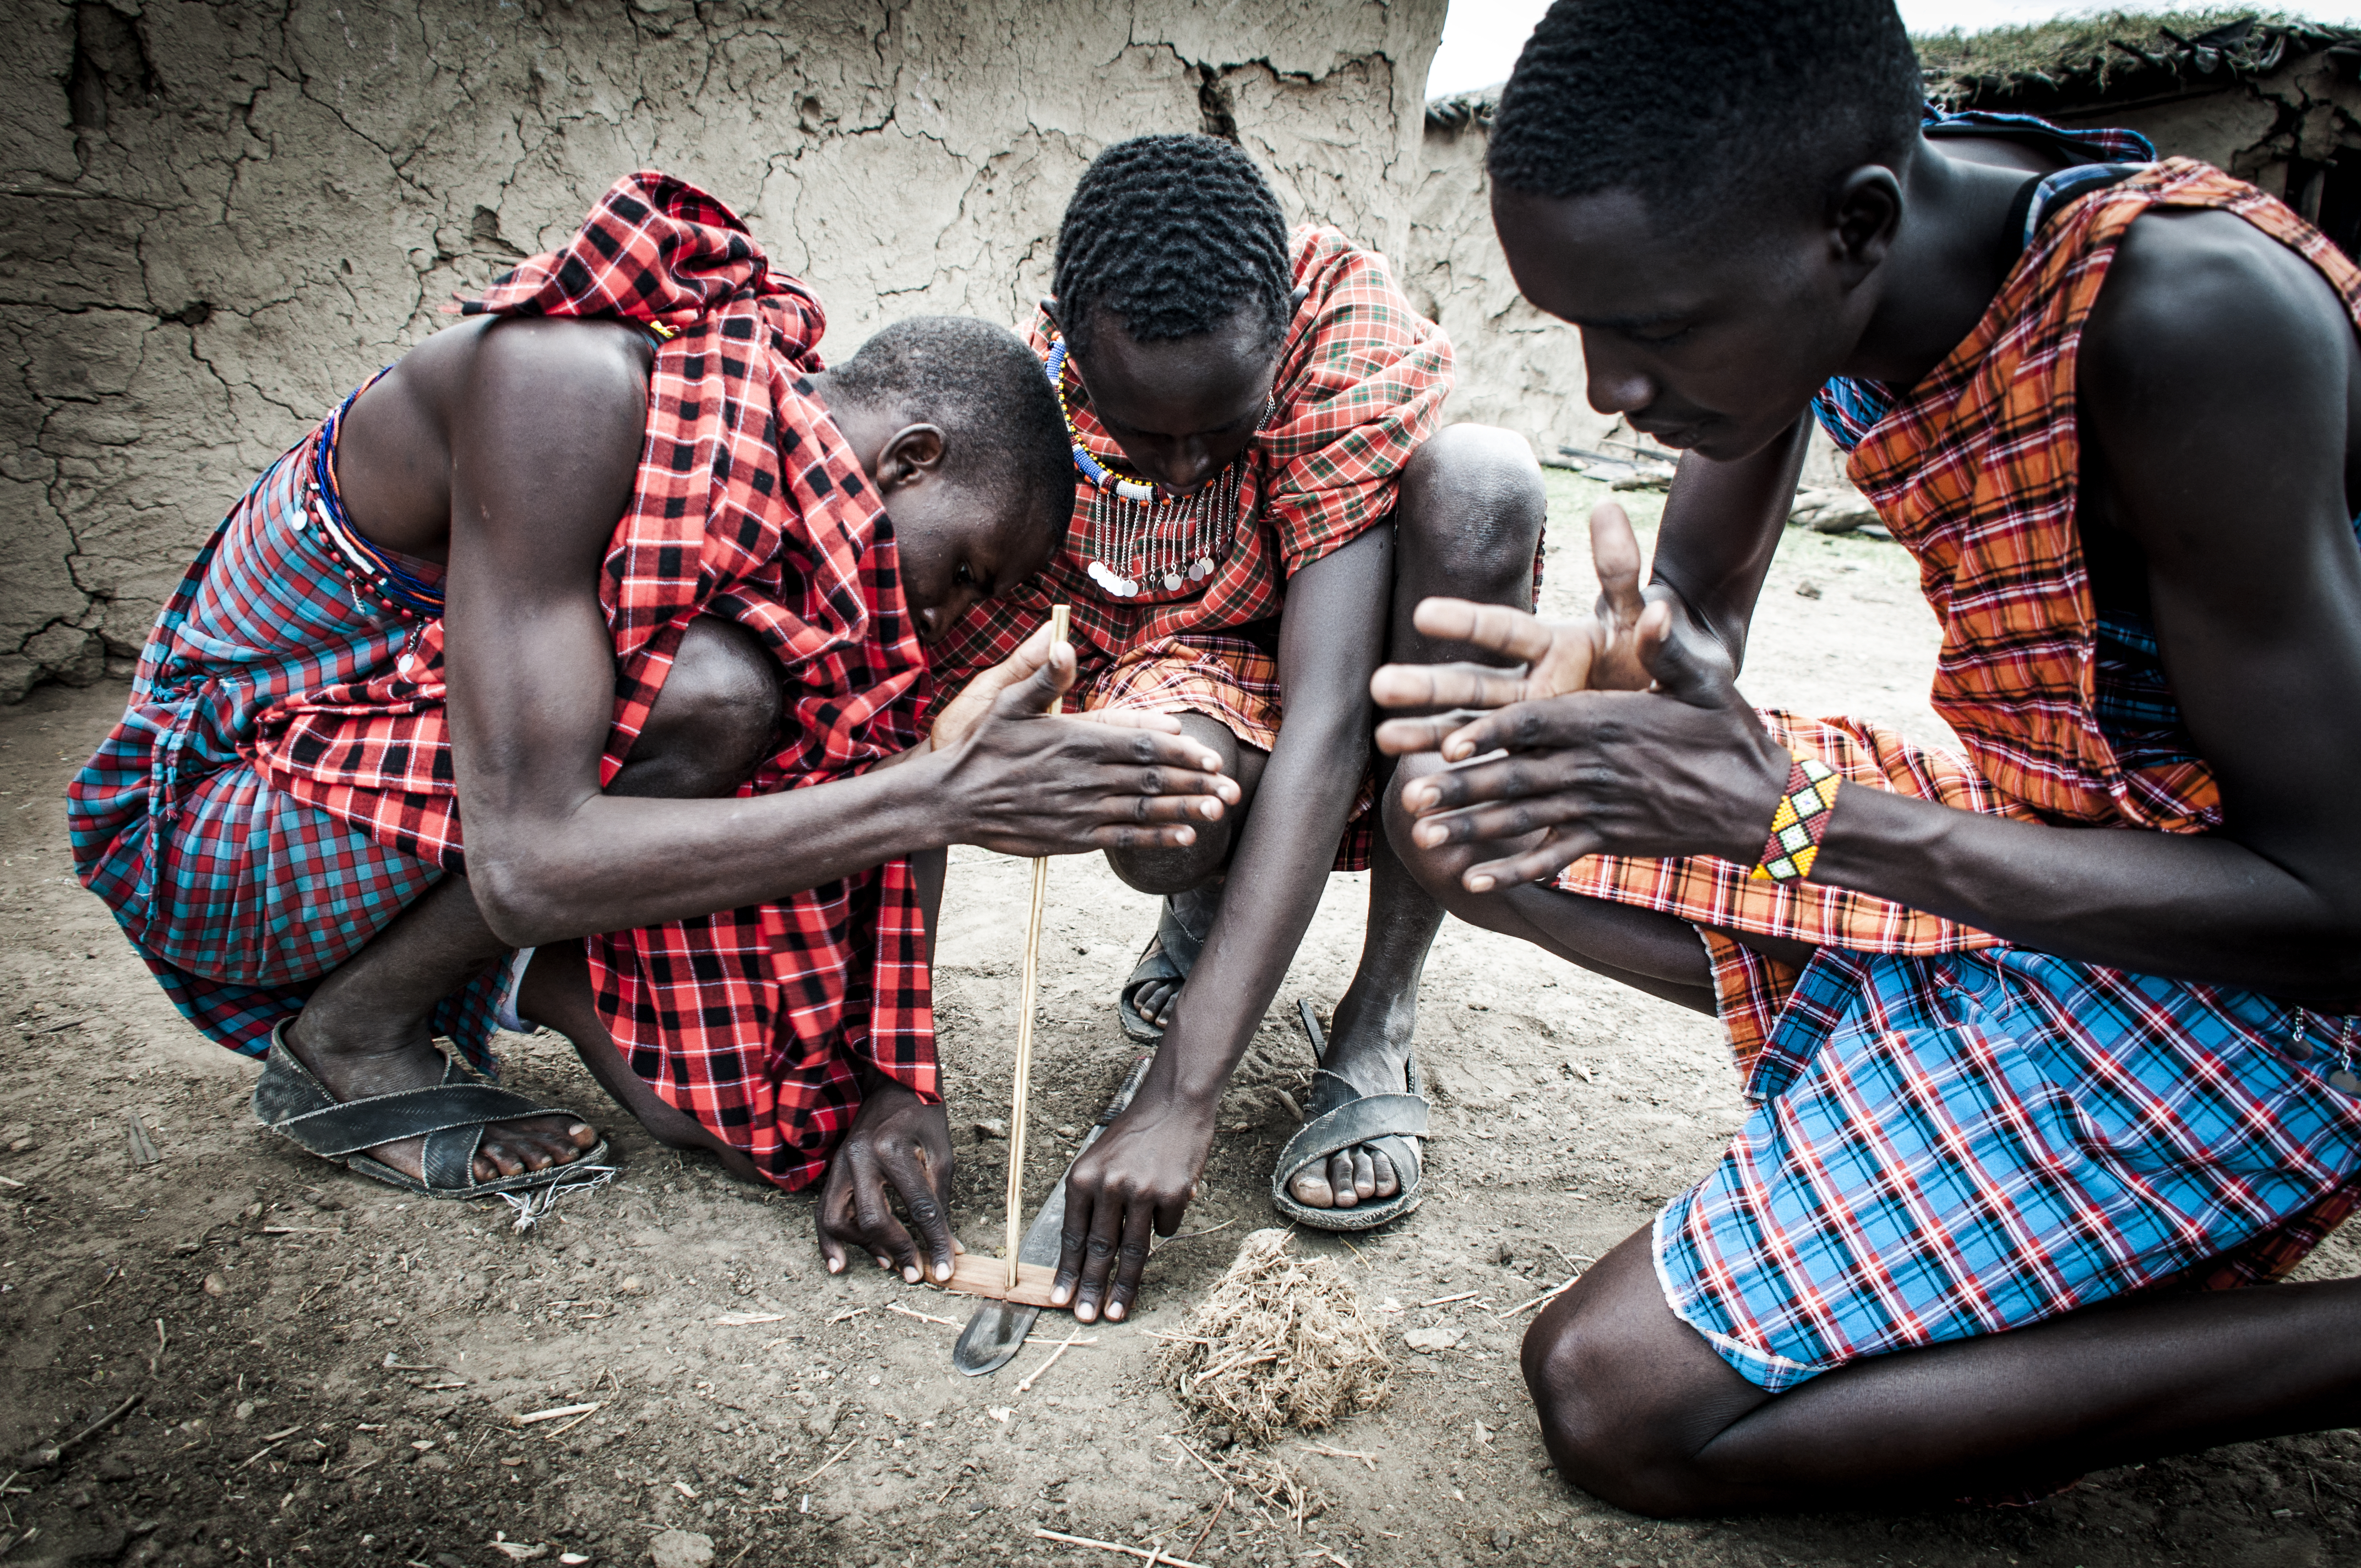 Masai warriors lighting a fire